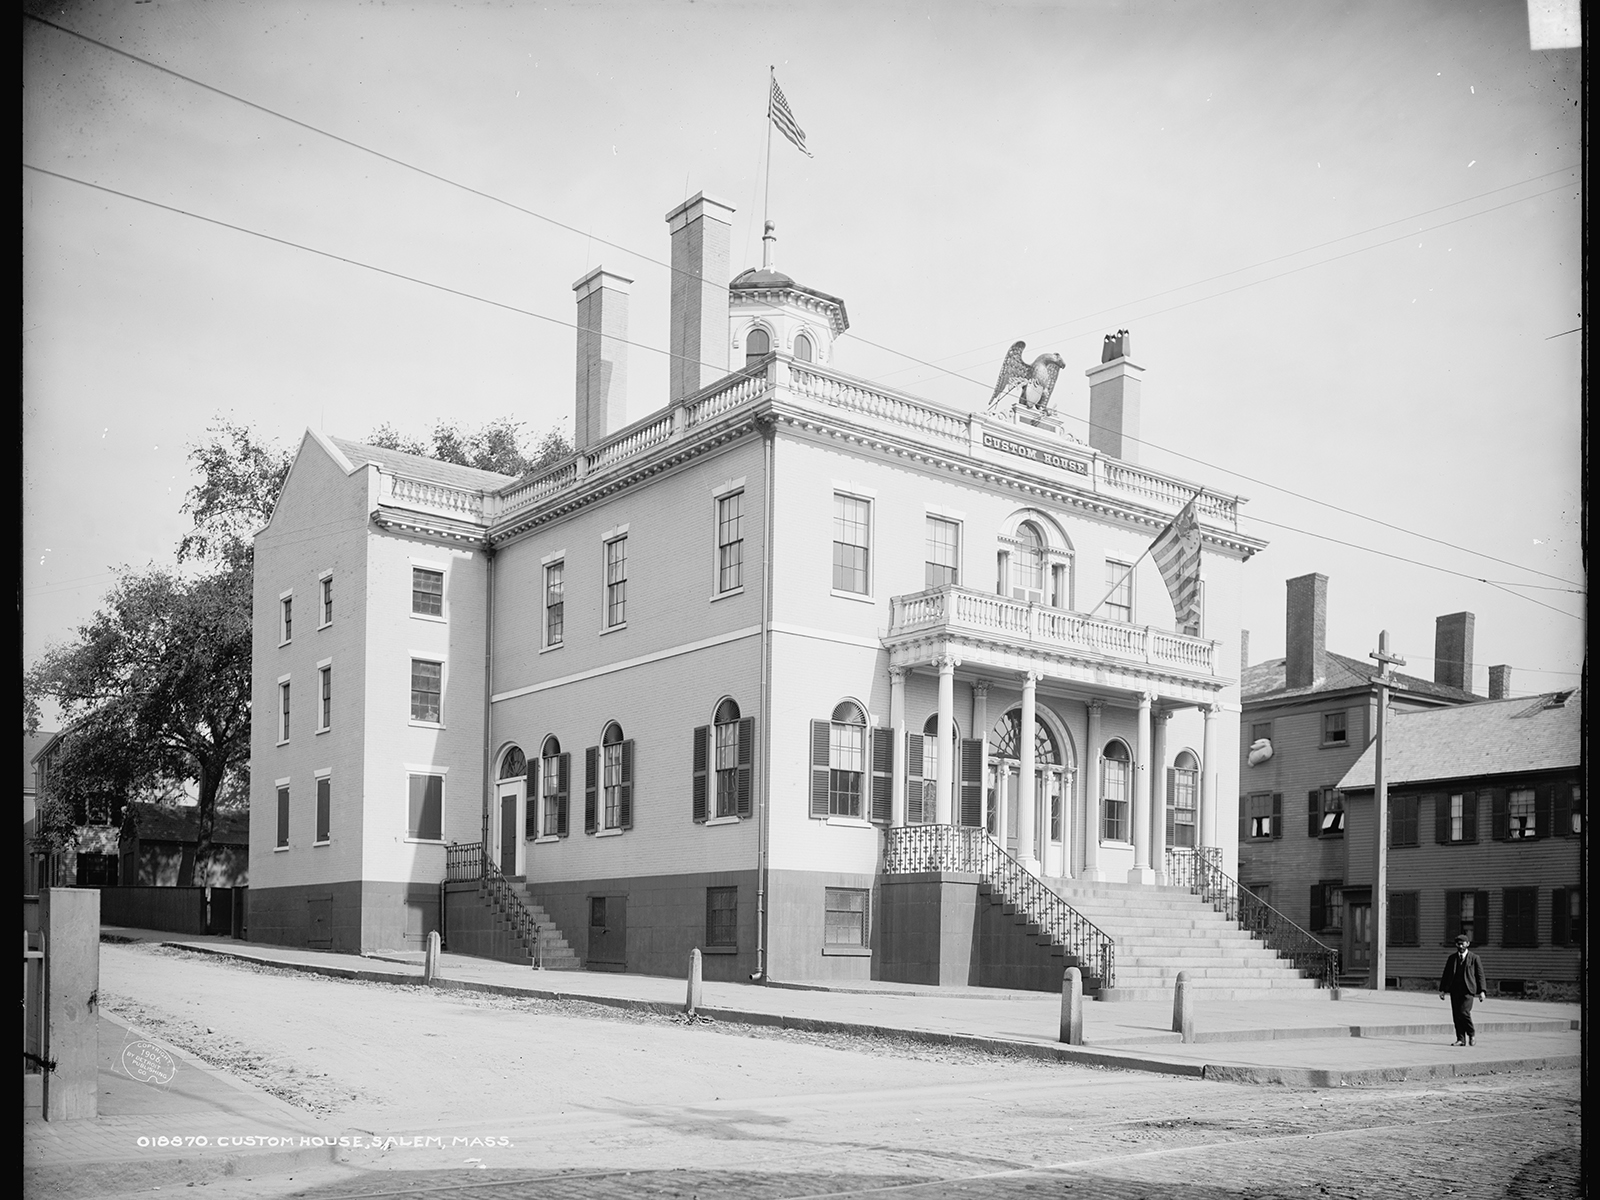 A photo of the Salem Customhouse